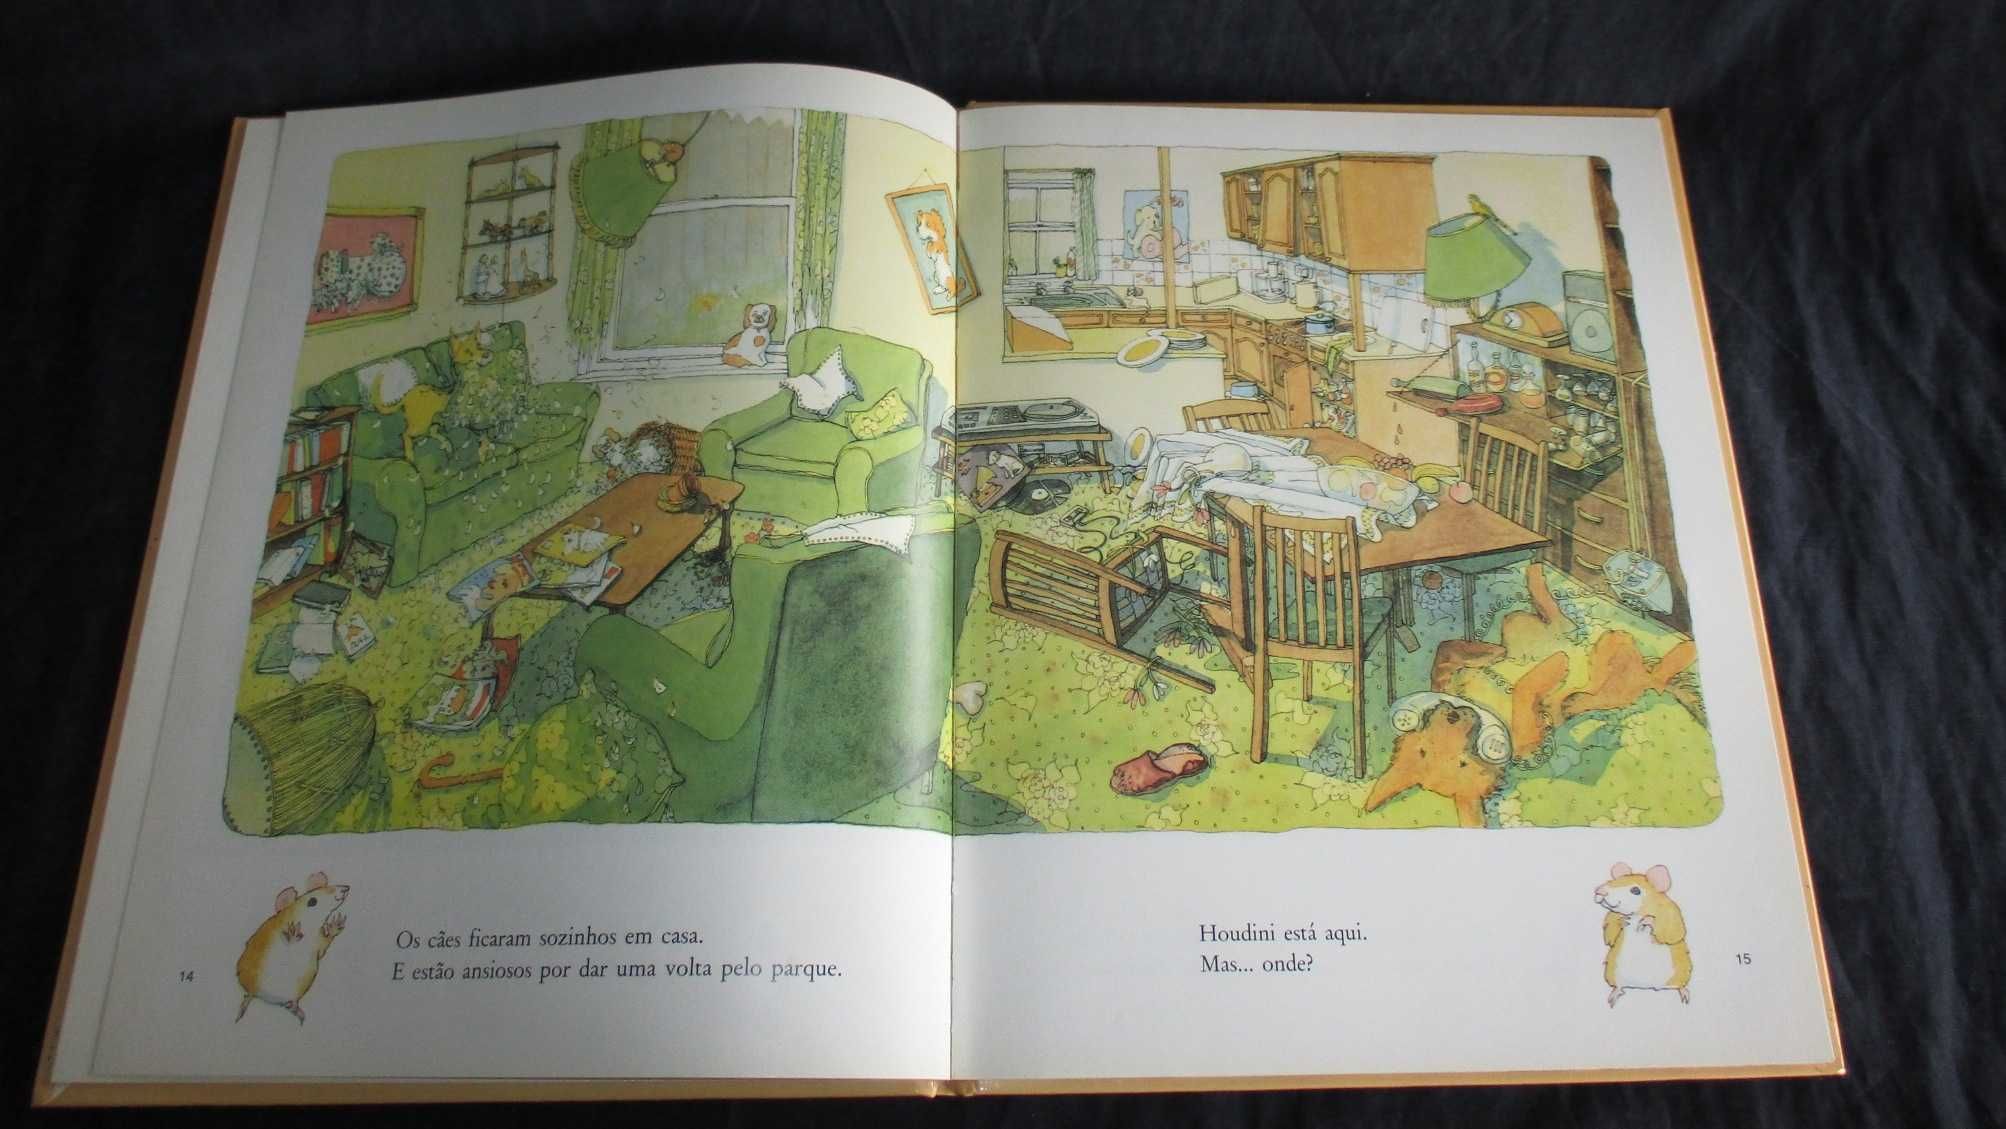 Livro Onde Está o Hamster? Terence Blacker Terramar